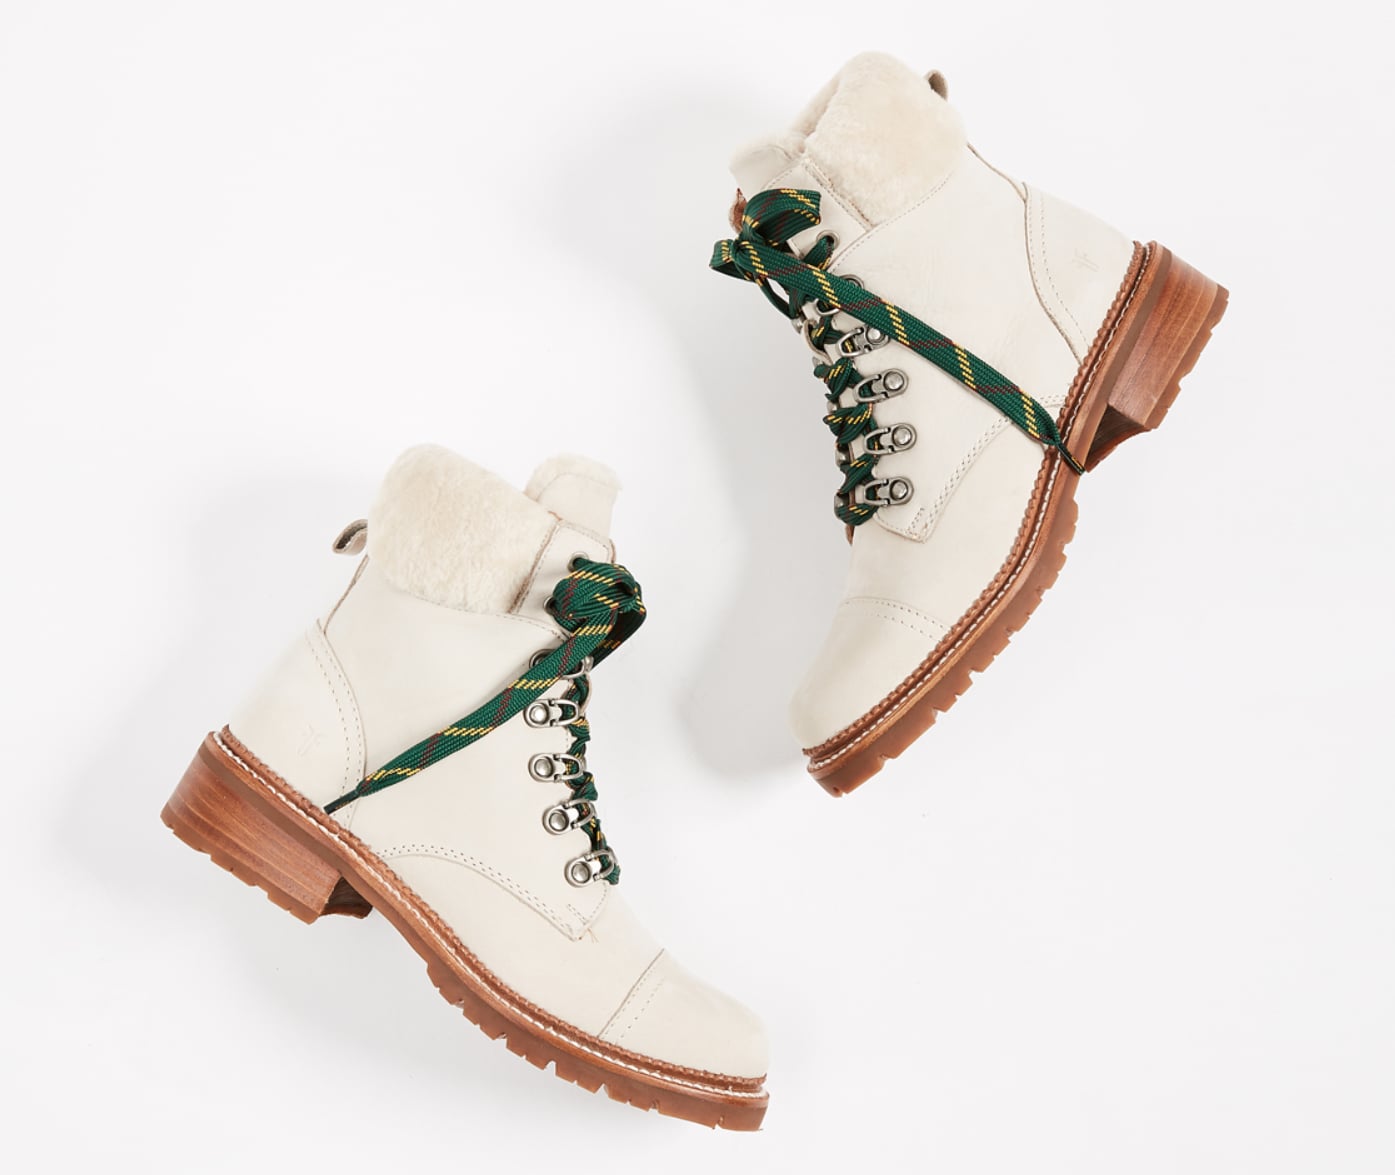 frye winter boots